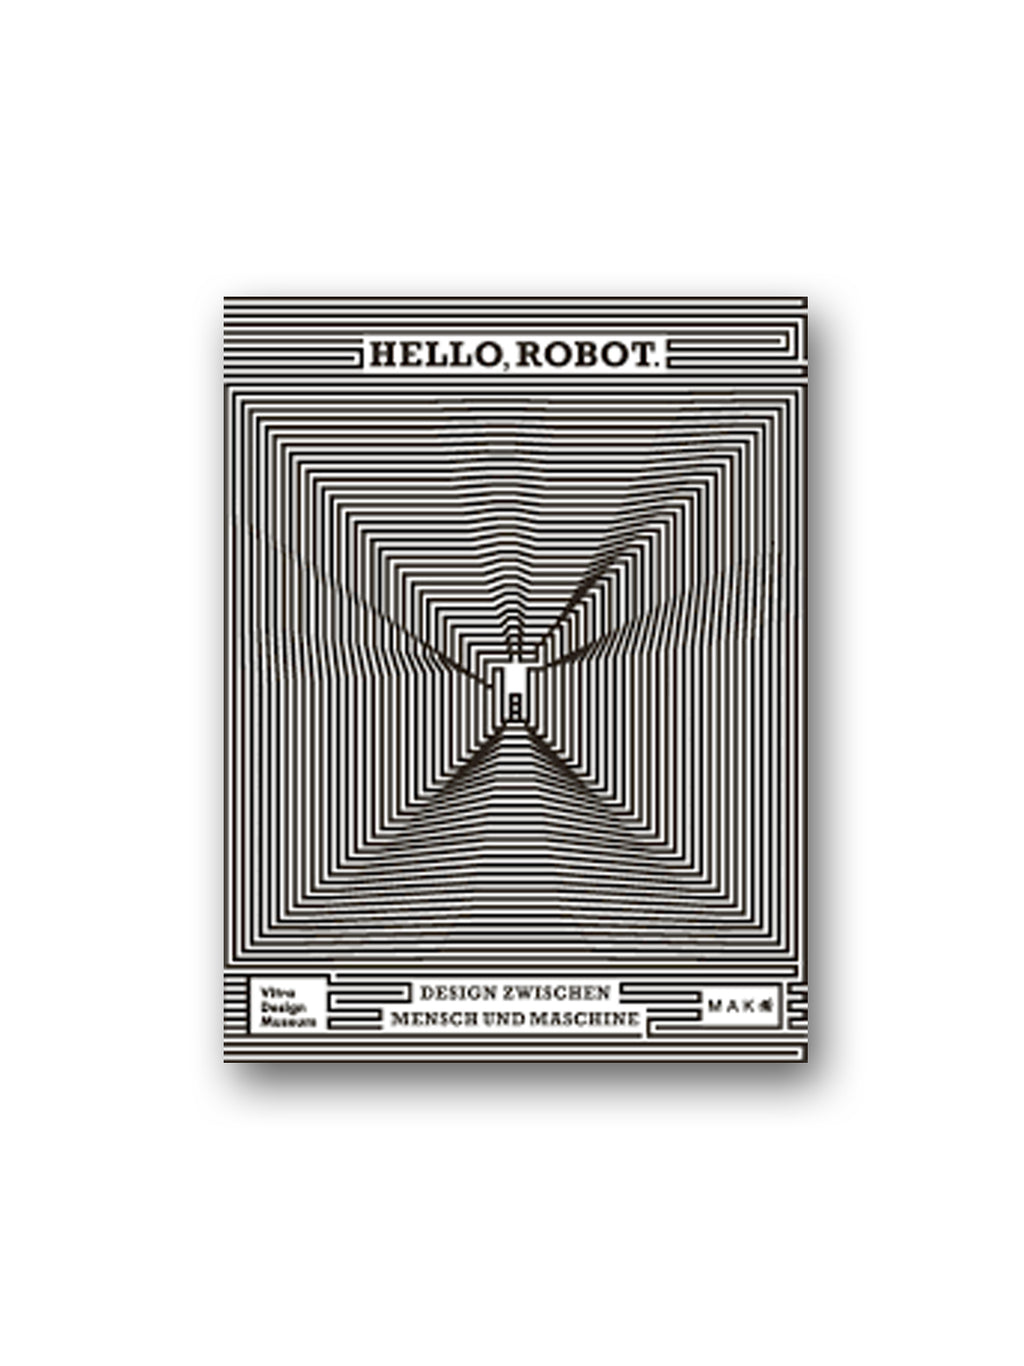 Hello, Robot.